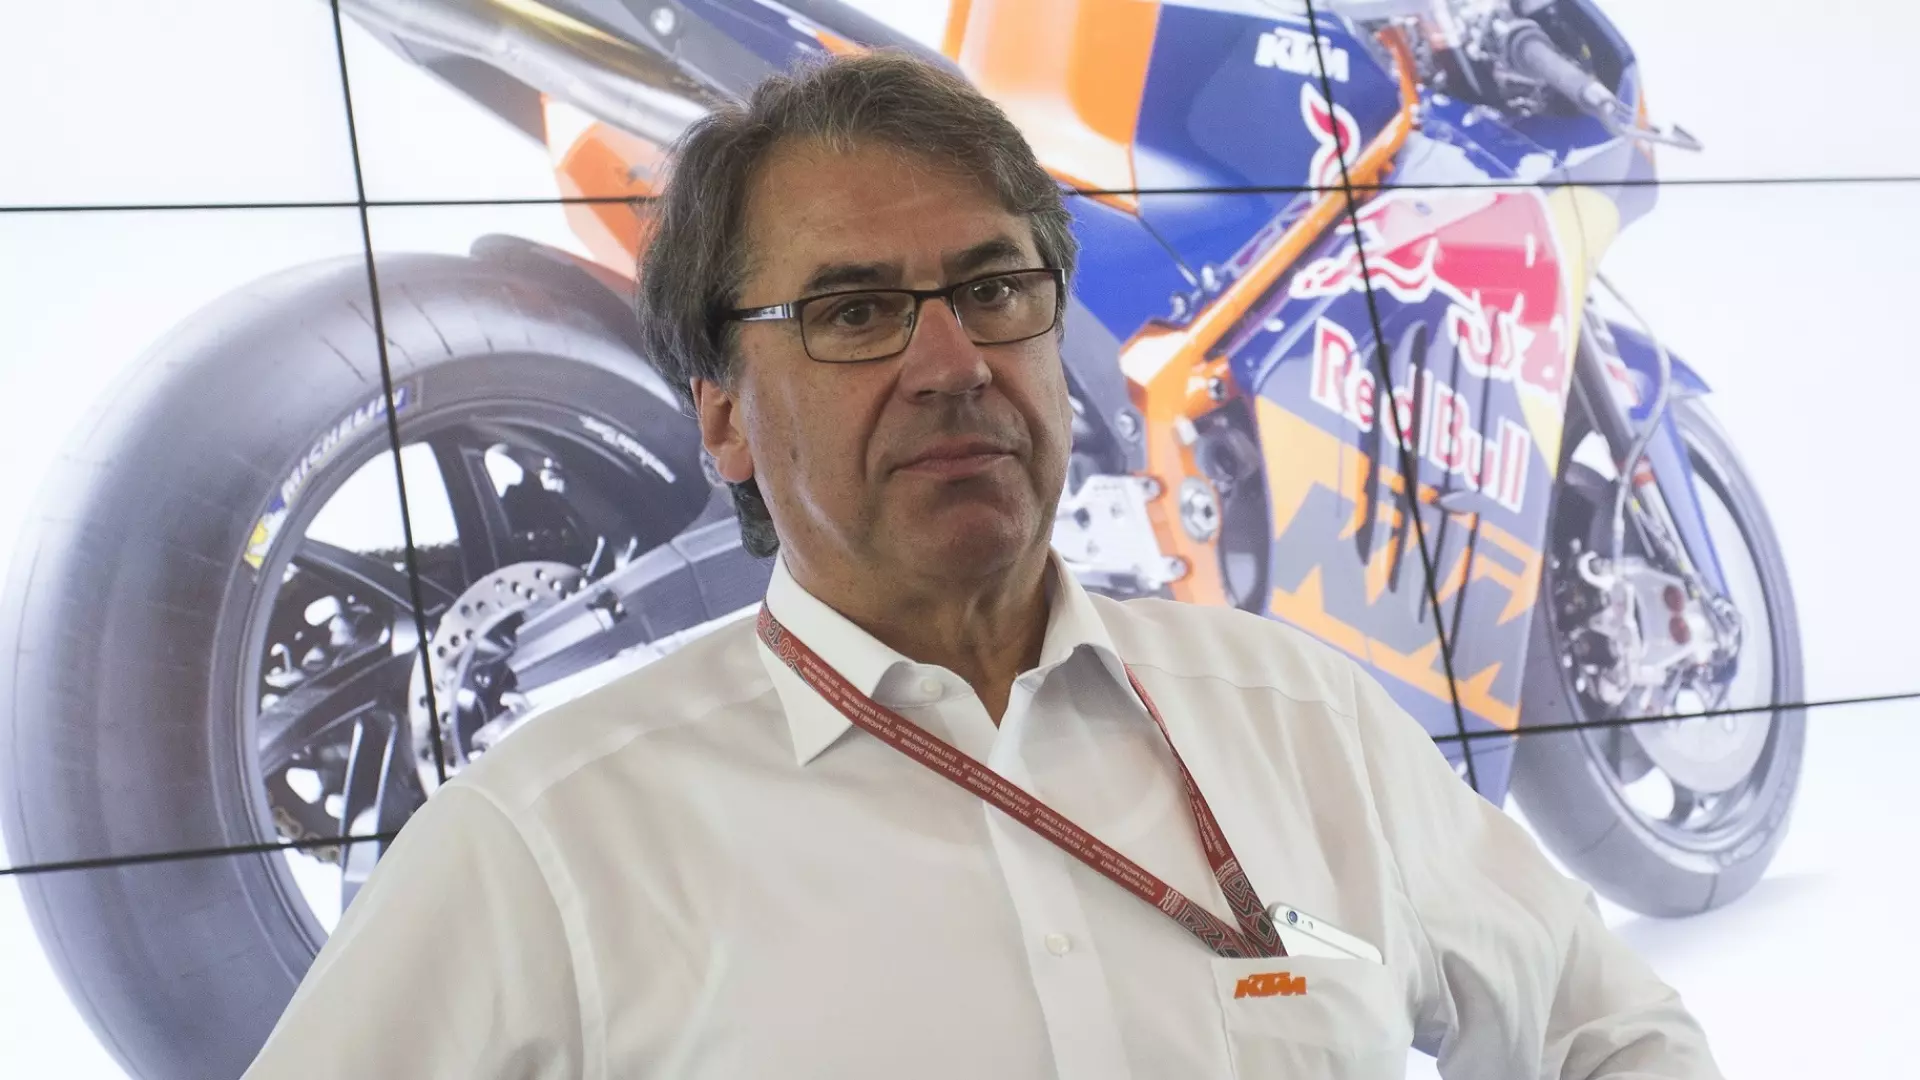 KTM, Pierer rimpiange i tempi di Valentino Rossi